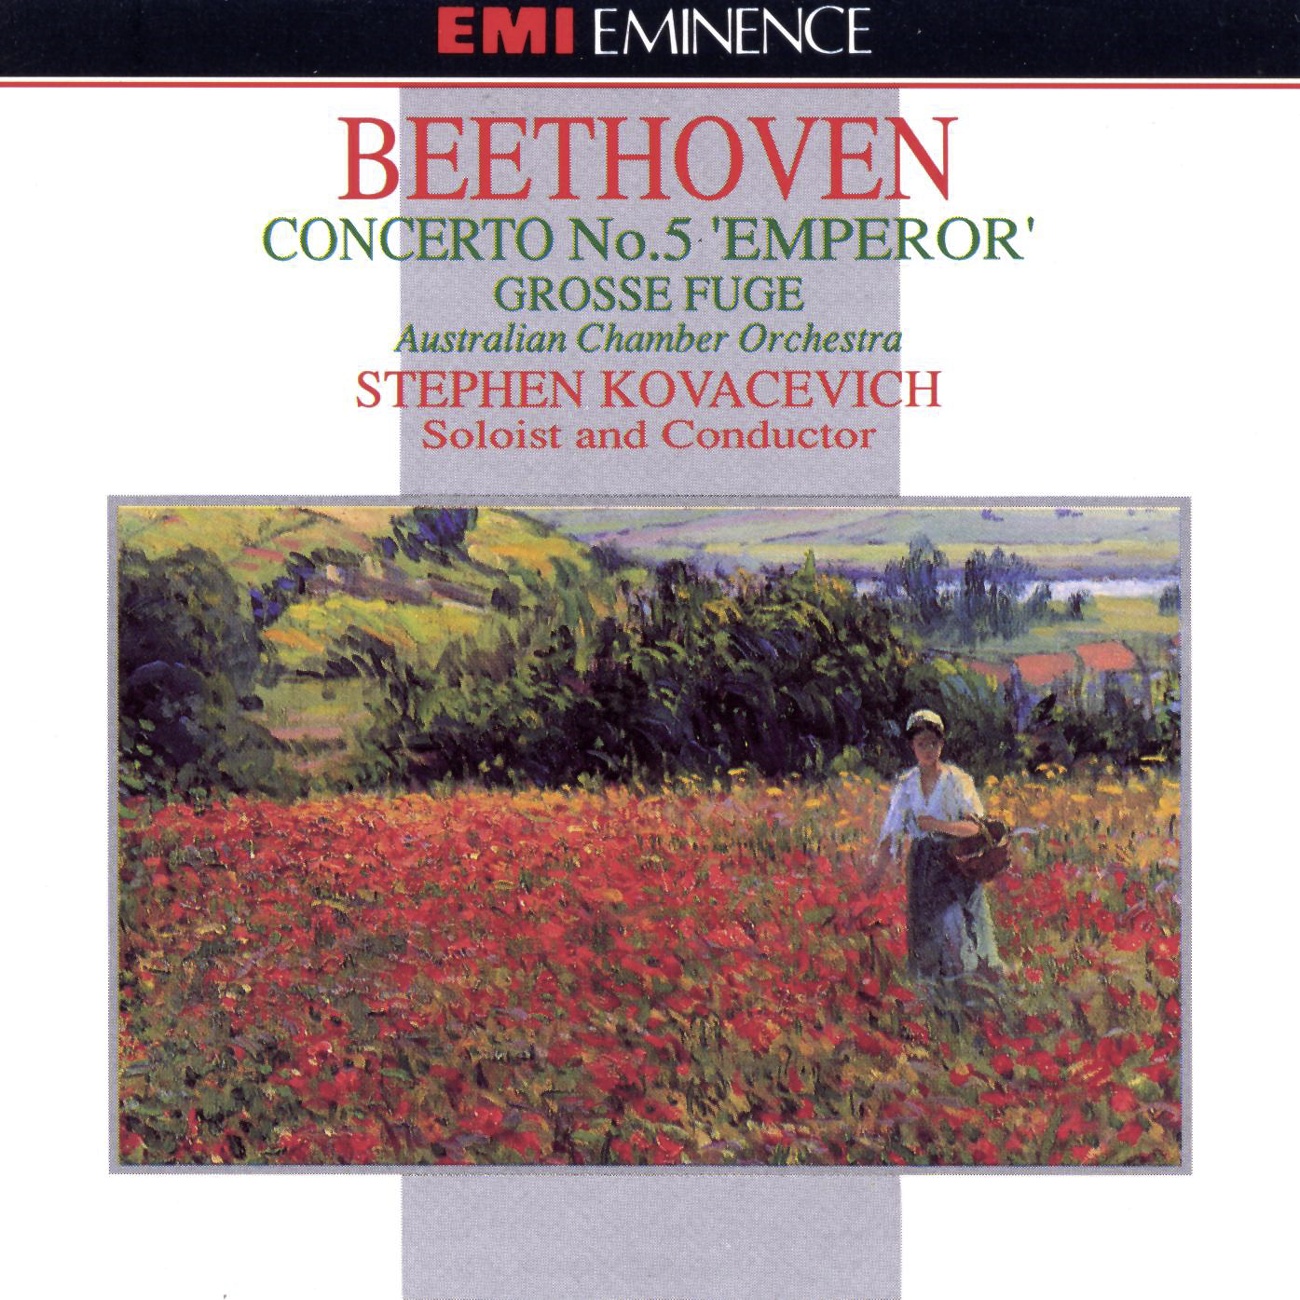 Piano Concerto No. 5 in E flat 'Emperor' Op. 73: I. Allegro (cadenza by Beethoven)